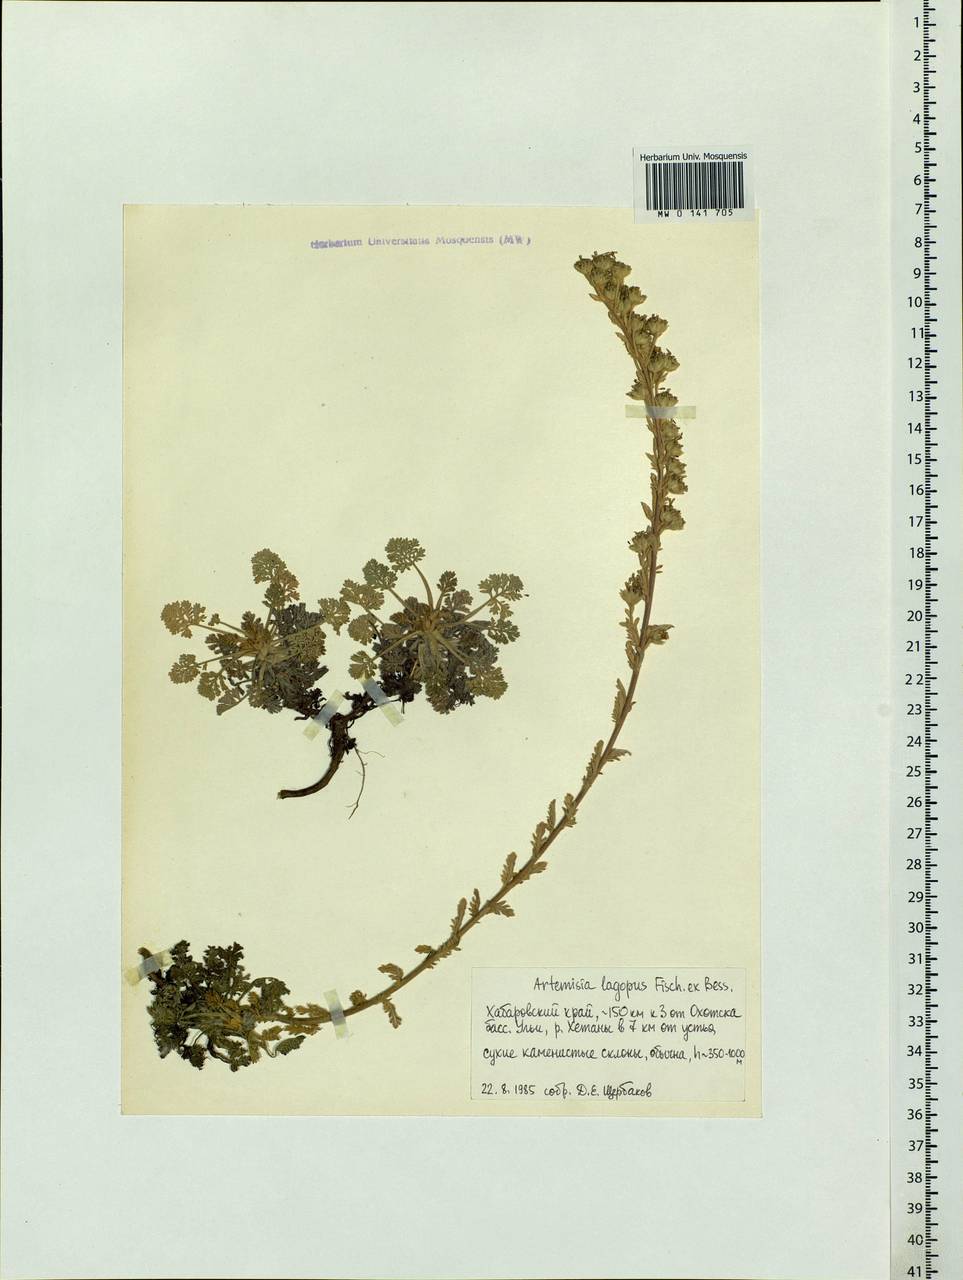 Artemisia lagopus Fisch. ex Besser, Siberia, Russian Far East (S6) (Russia)